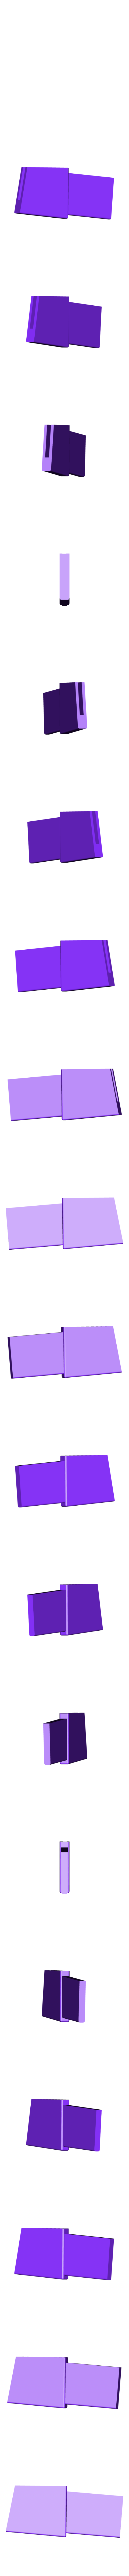 Left_Wing_Purple.stl Télécharger fichier STL gratuit Buzz L'Éclair - Impression multicolore • Modèle à imprimer en 3D, ChaosCoreTech